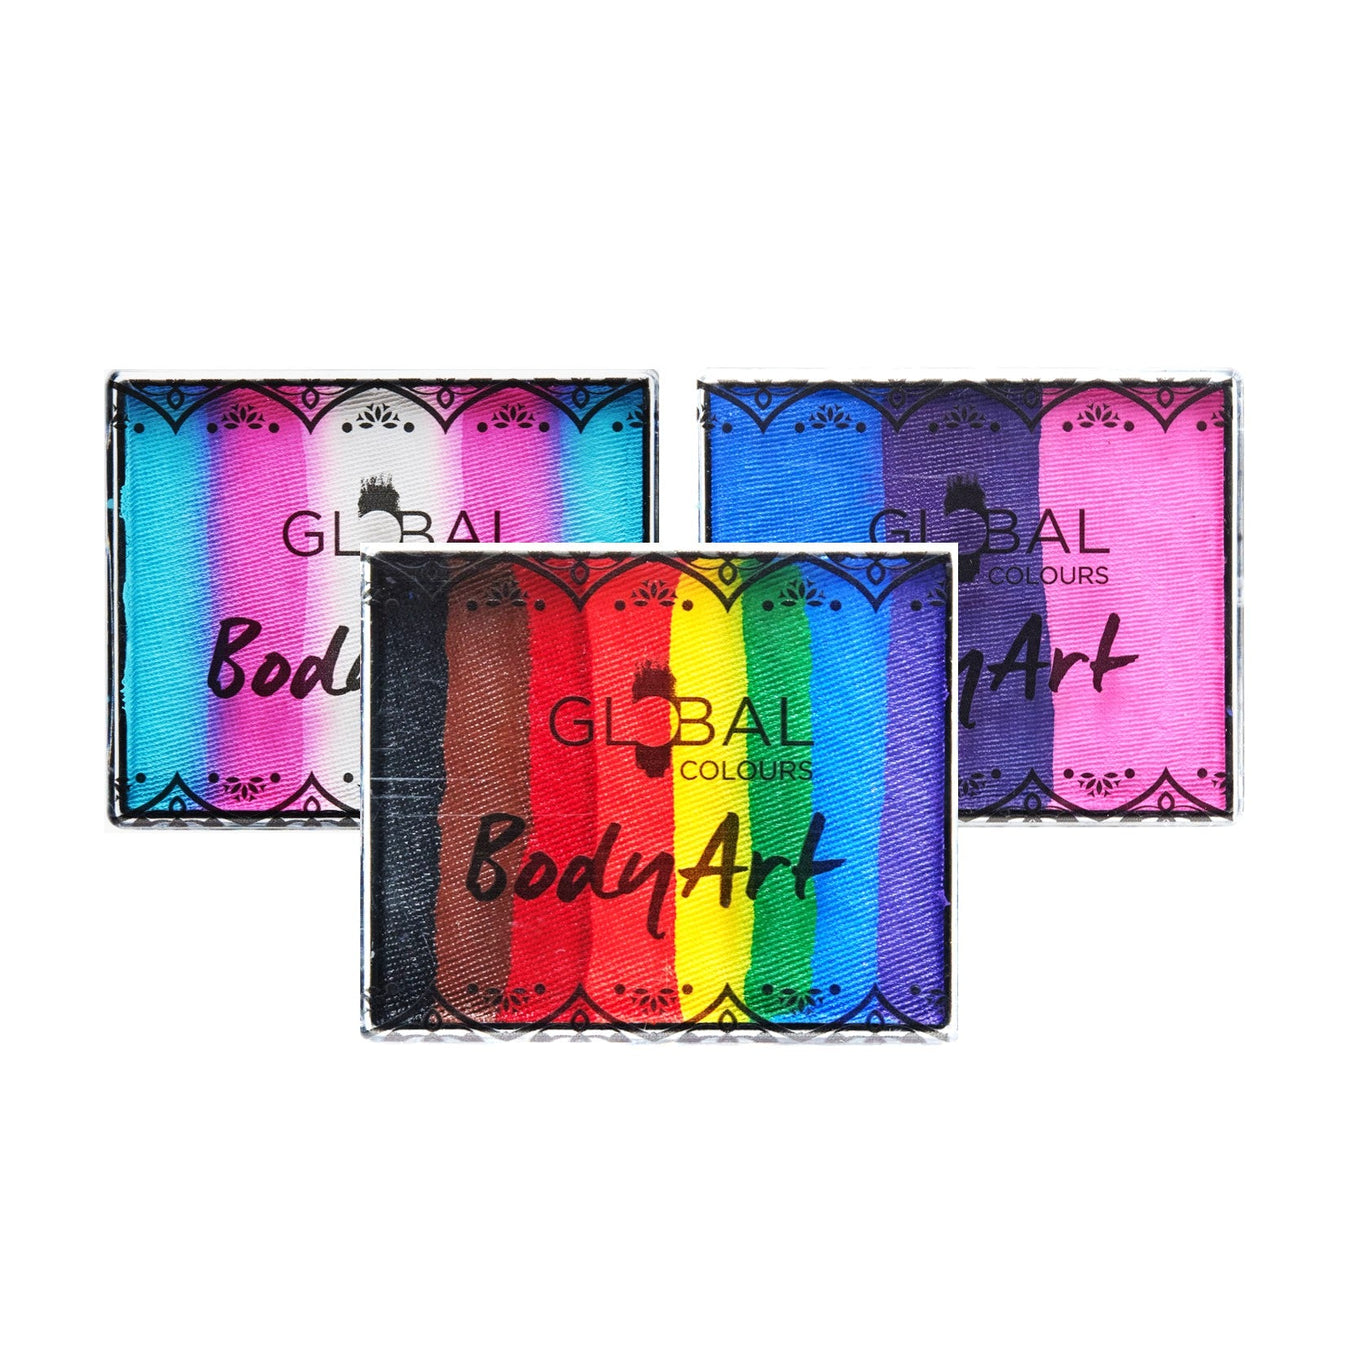 Global Rainbow Cakes - 50gr Aprox